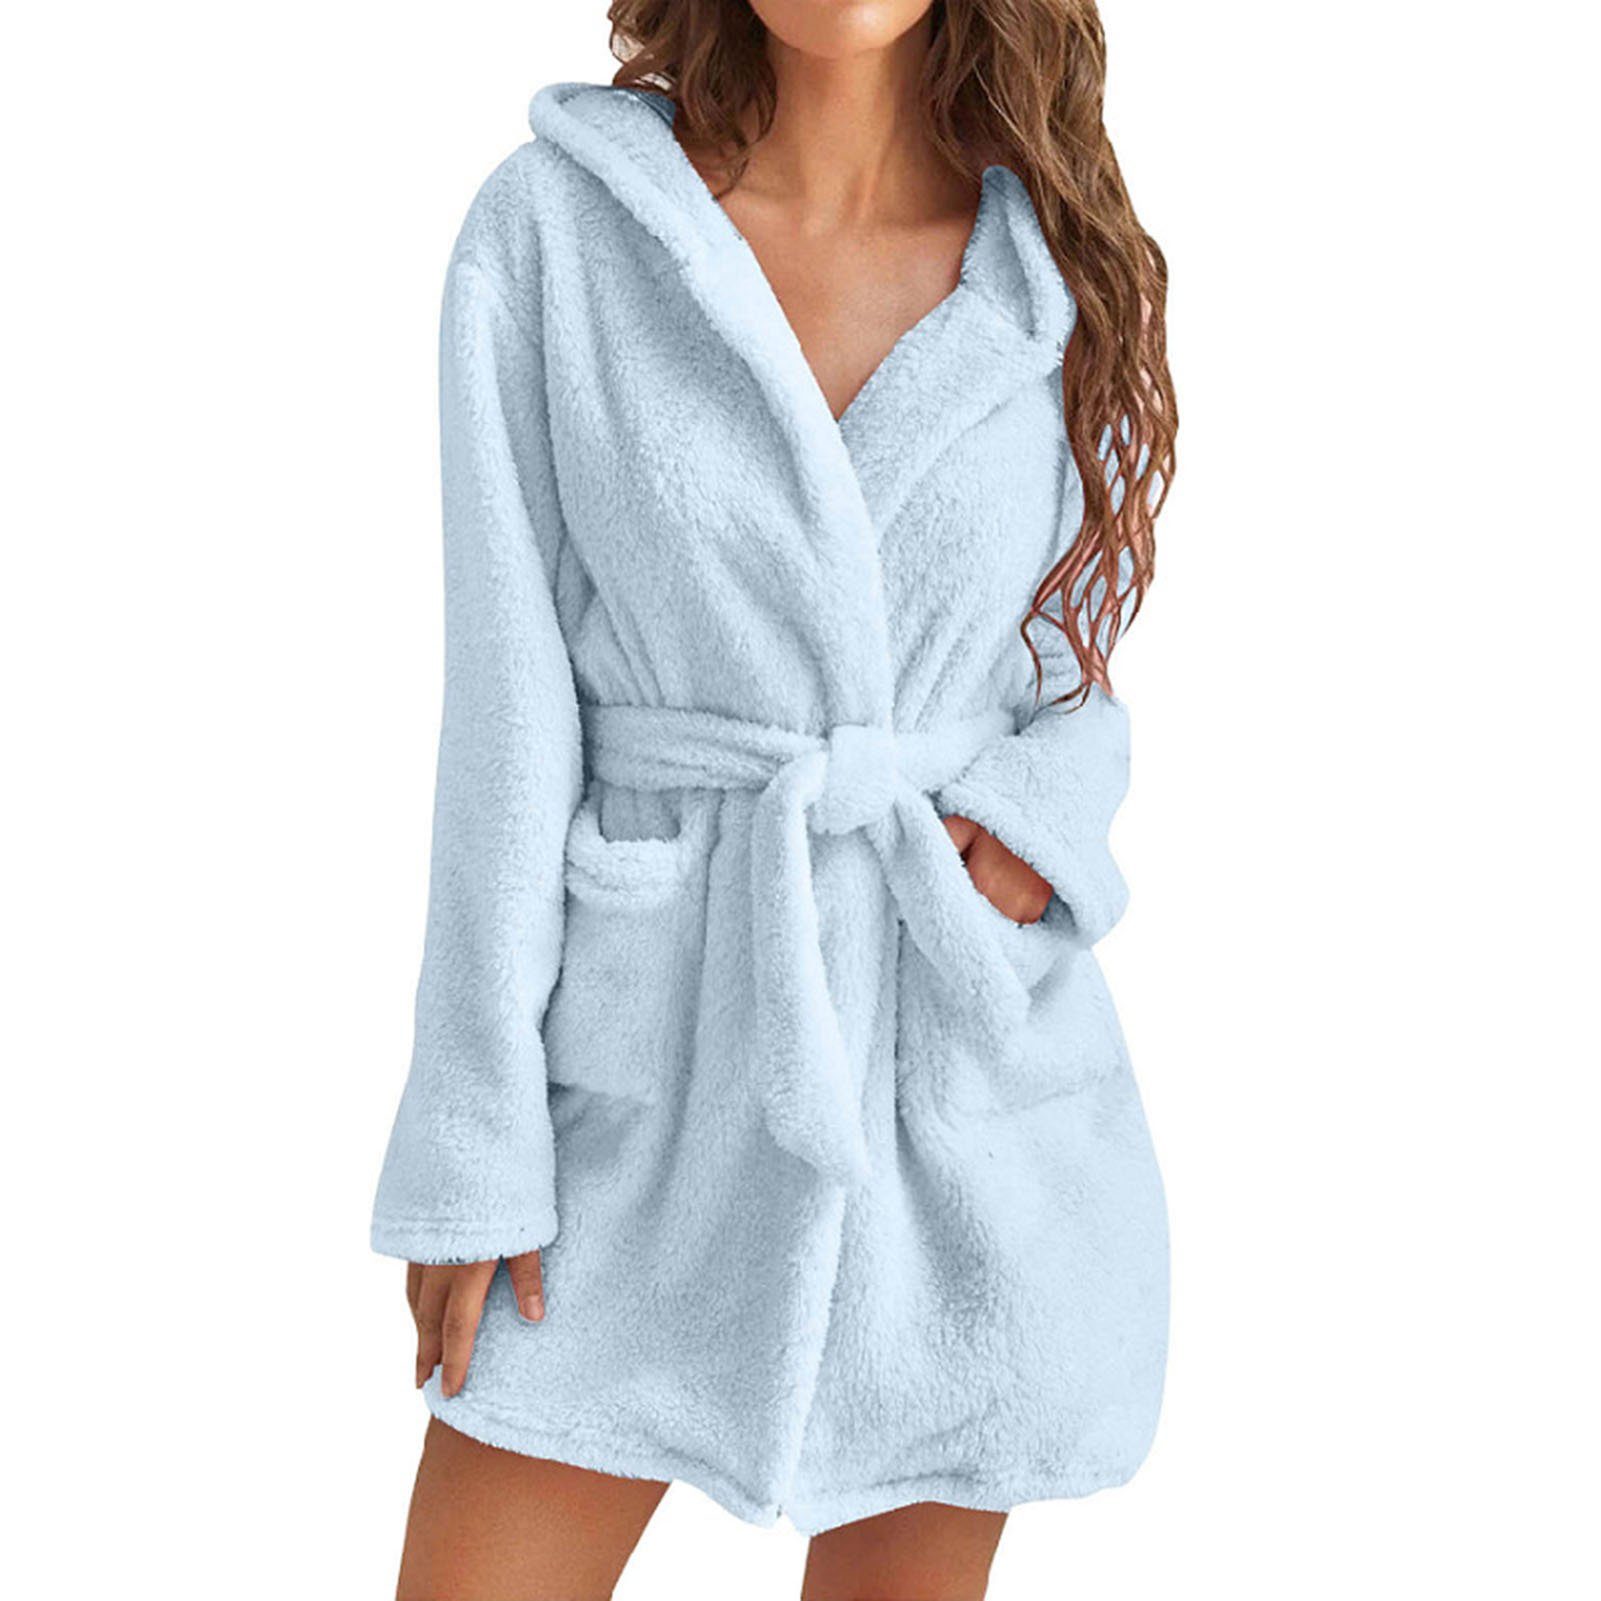 Blusmart Damenbademantel Damen-Handtuch-Bademantel Mit 2 Taschen, Atmungsaktiv, Bequem, Für sky blue